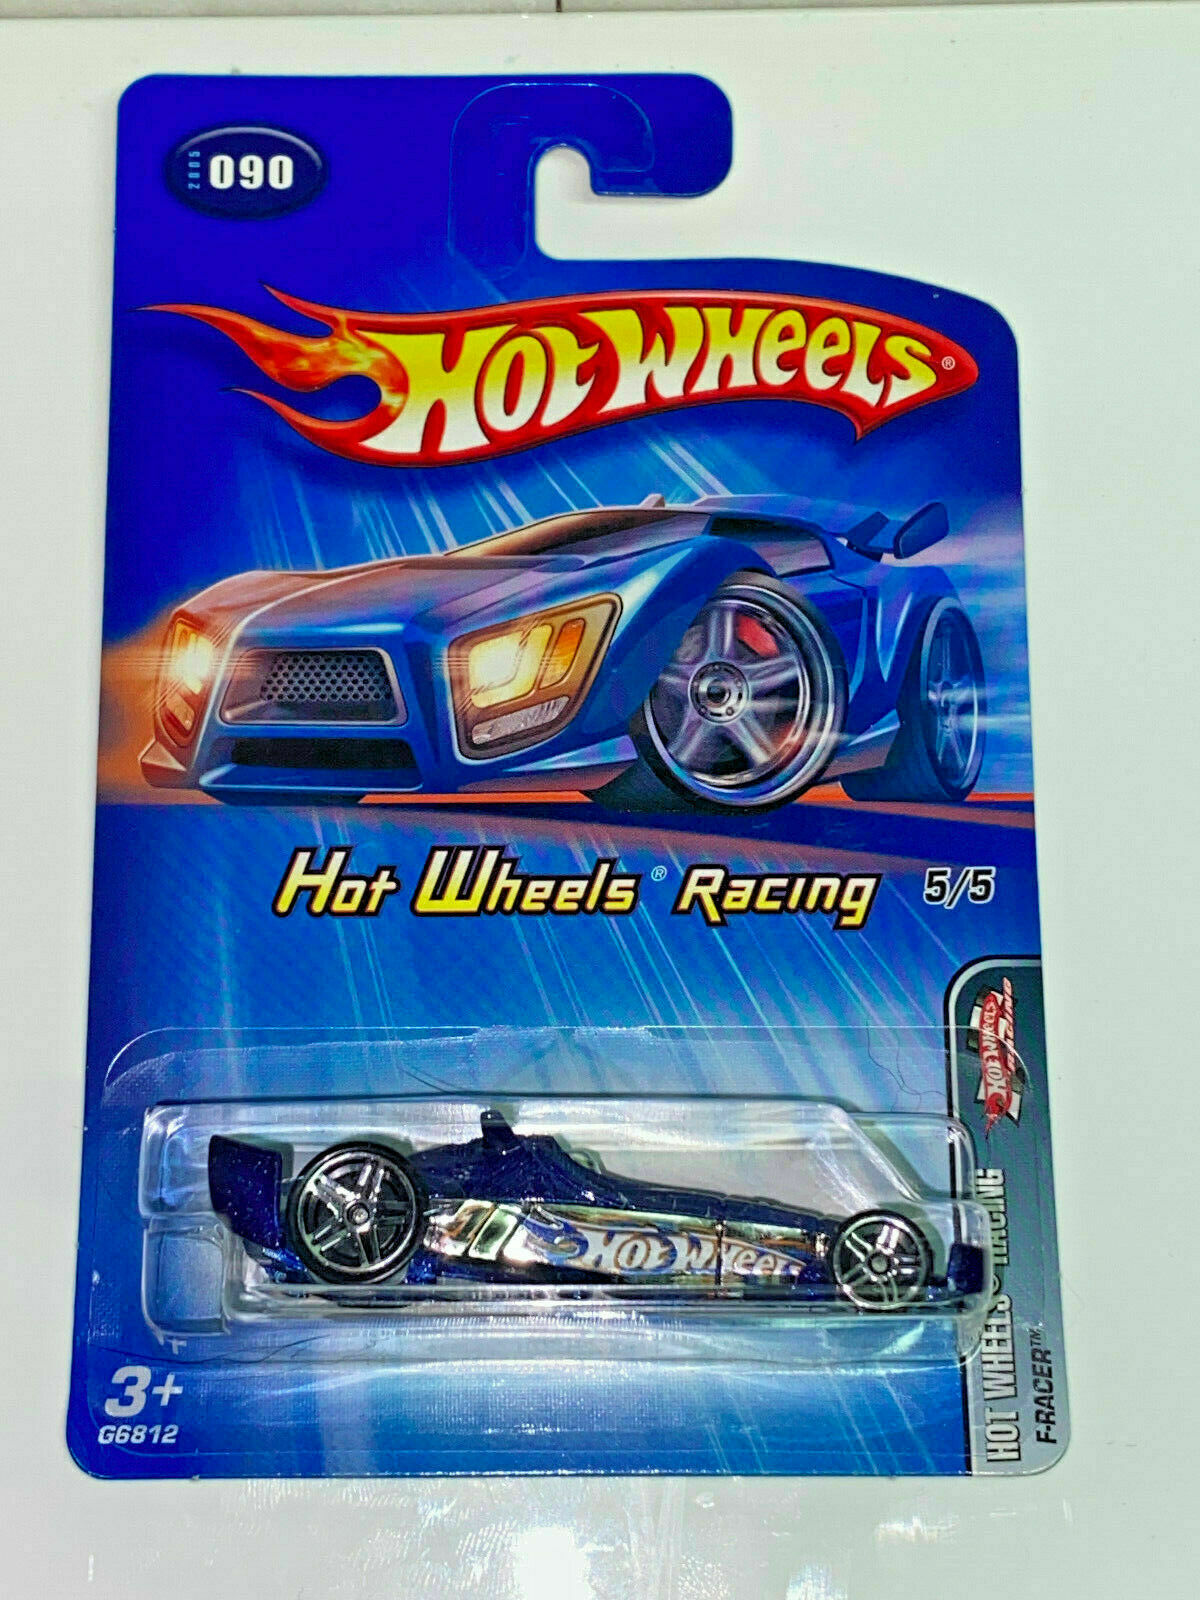 2005 Hot Wheels Hot Wheels Racing Full Set 5 Cars NIP #086,#087,#088,#089,#090